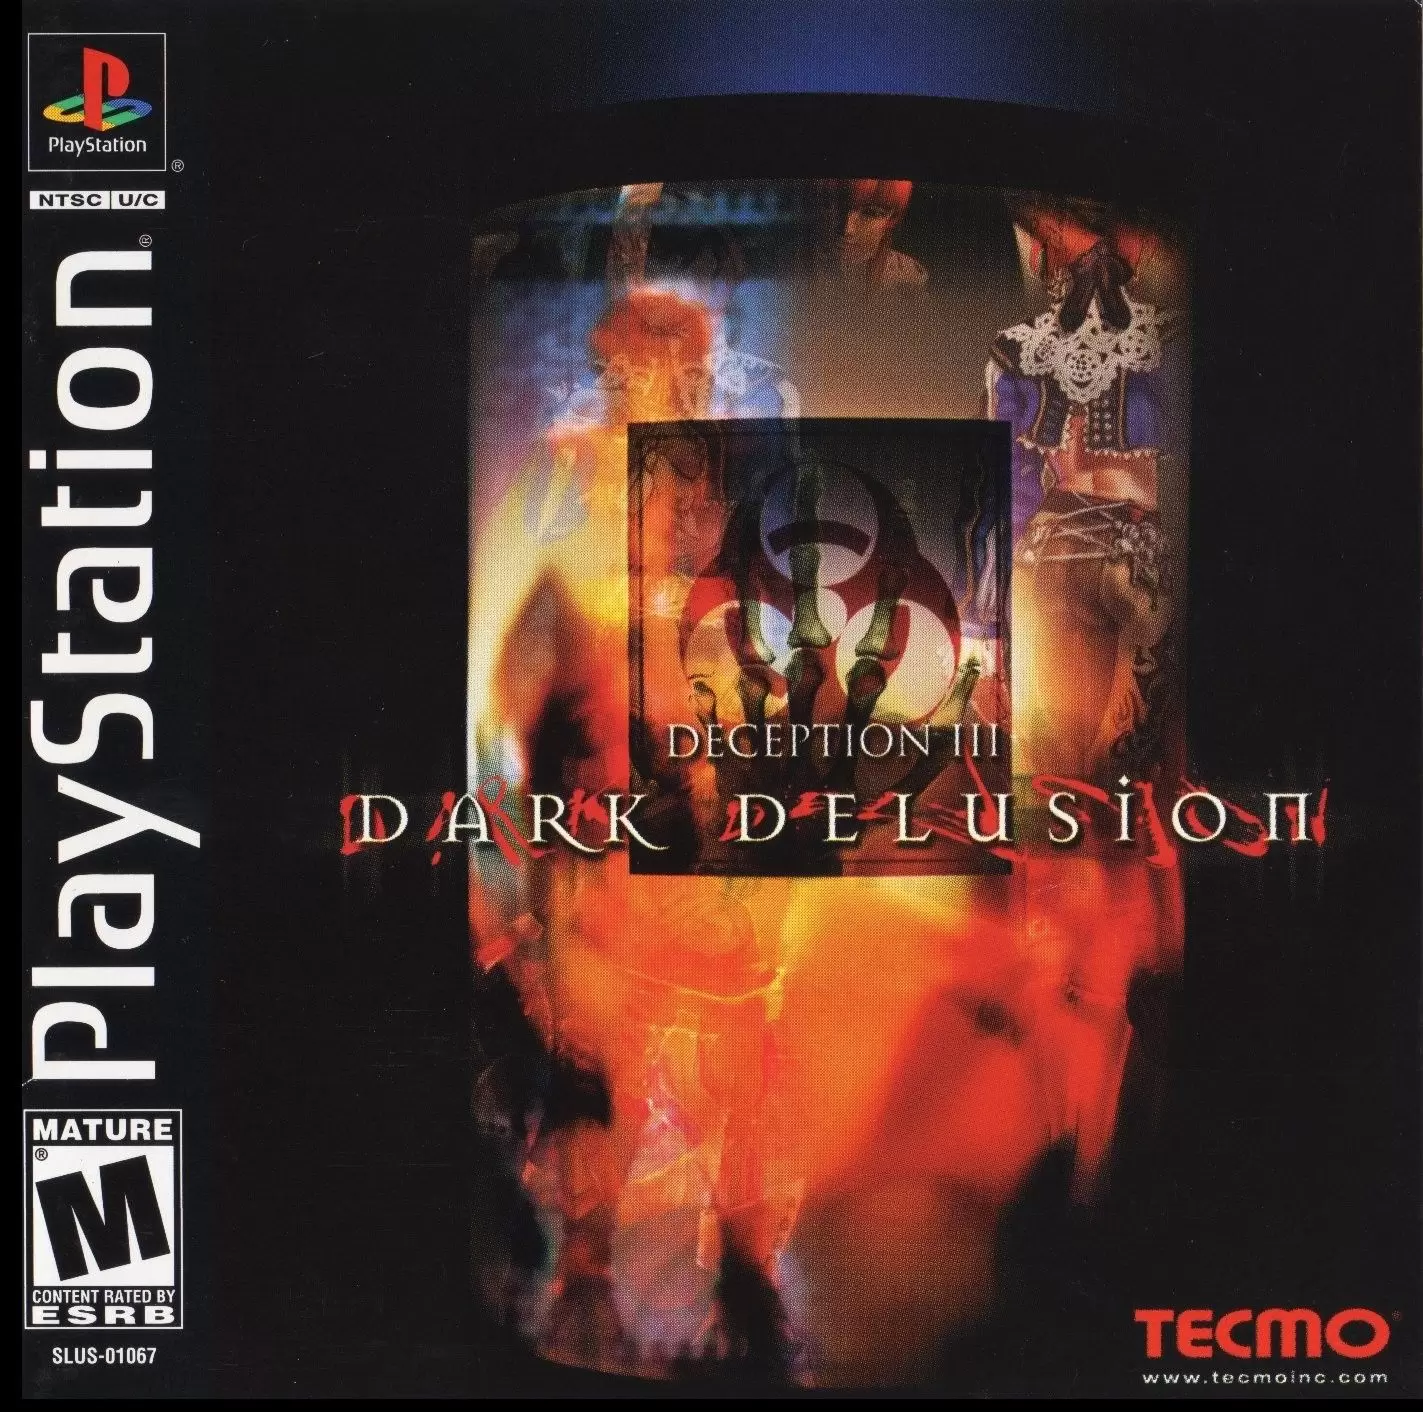 Playstation games - Deception III: Dark Delusion